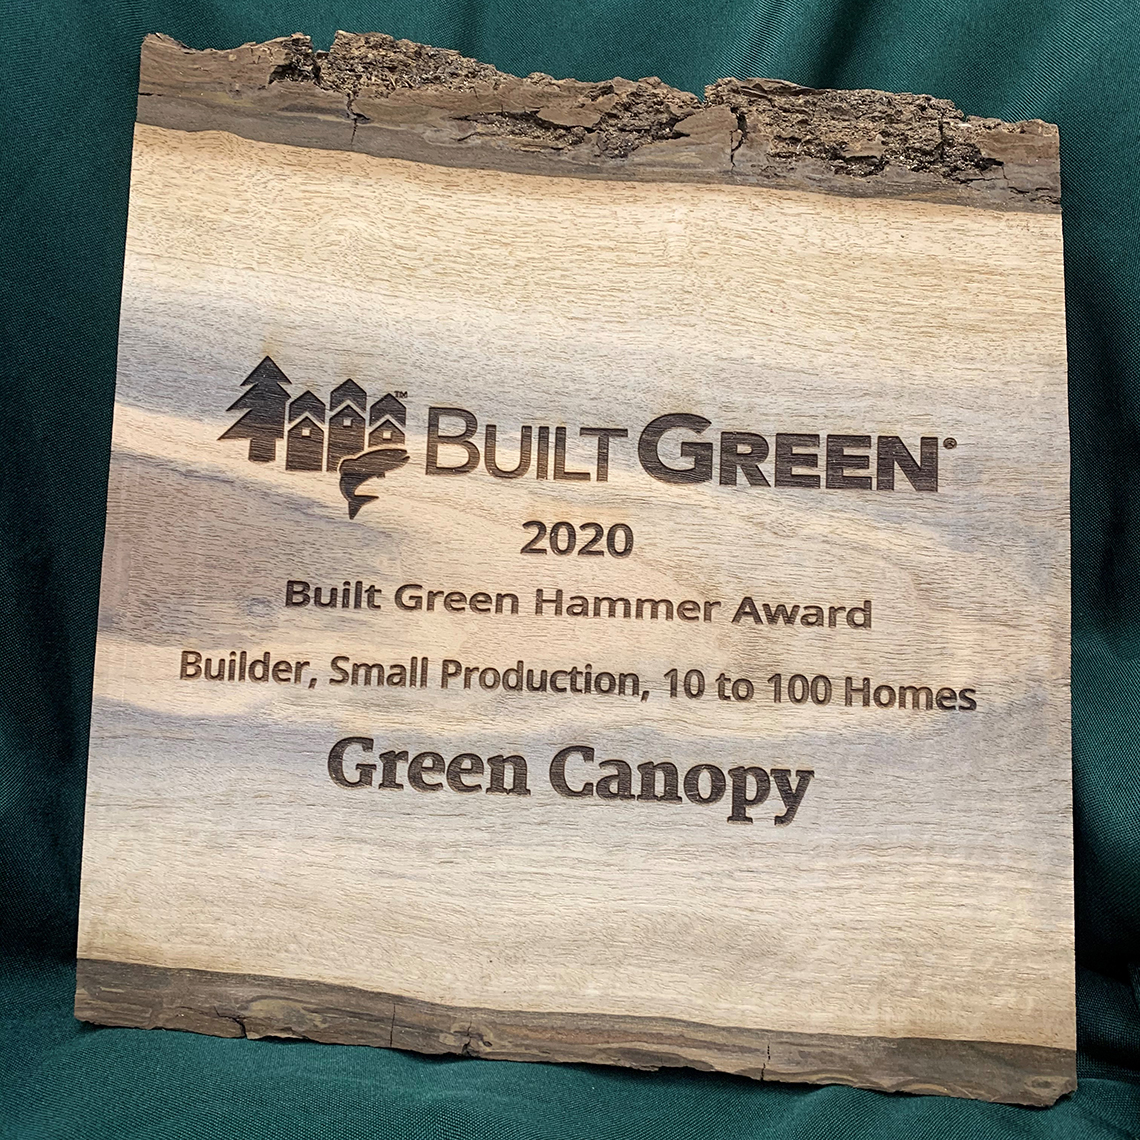 Green Canopy 2020 Built Green Hammer Award plaque